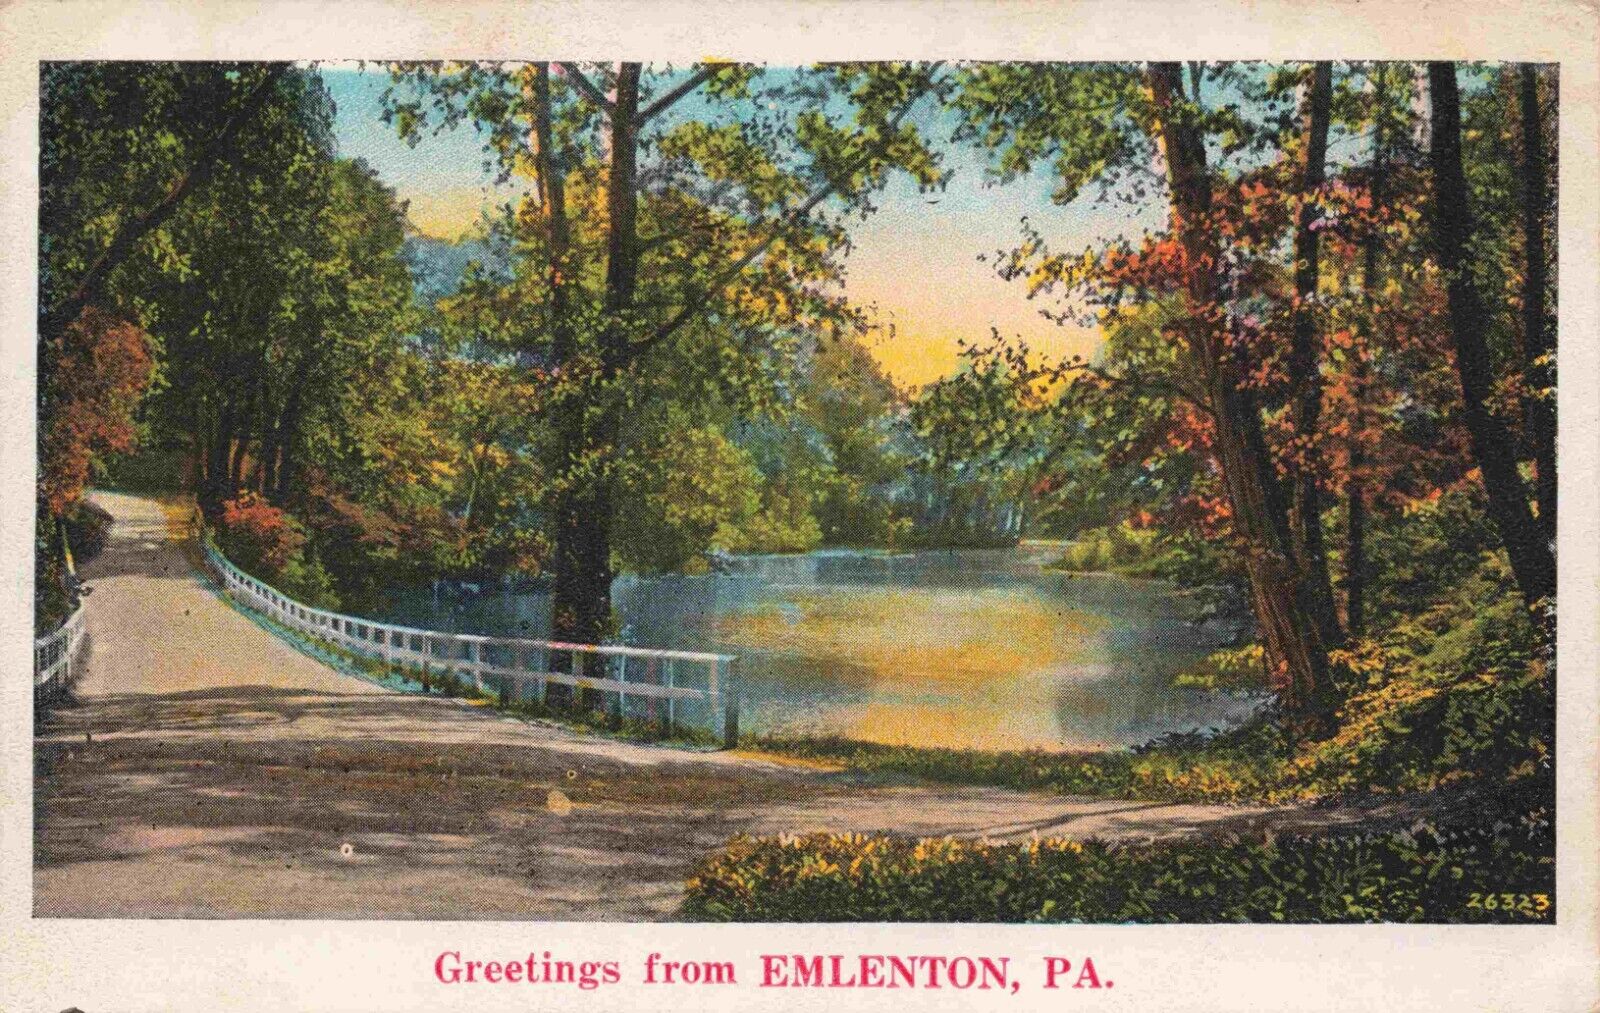 Emlenton Pennsylvania Greetings Vintage White Border Postcard PA Clarion County